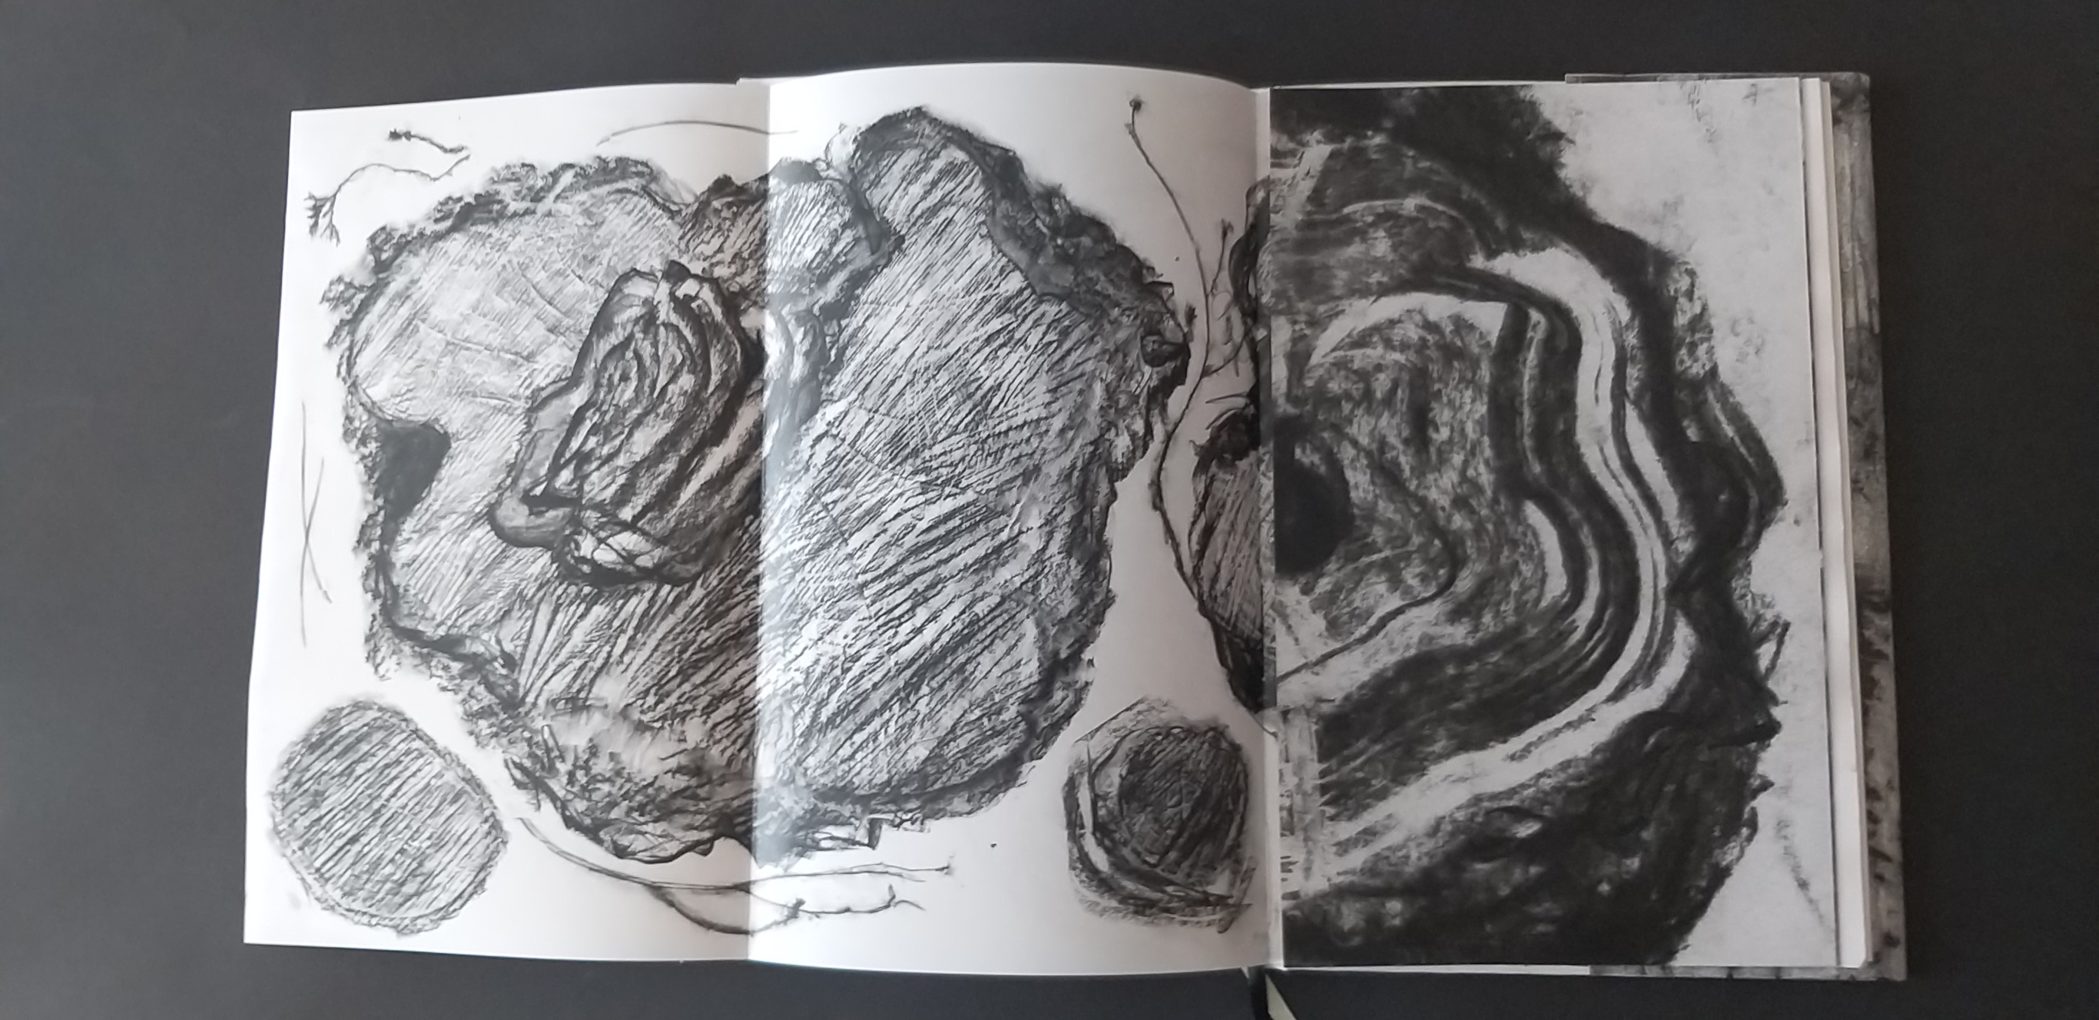 Ilustracja z książki autorstwa Grażyny Pasterskiej-Napadło "Nie bajka leśna", 2019 rok